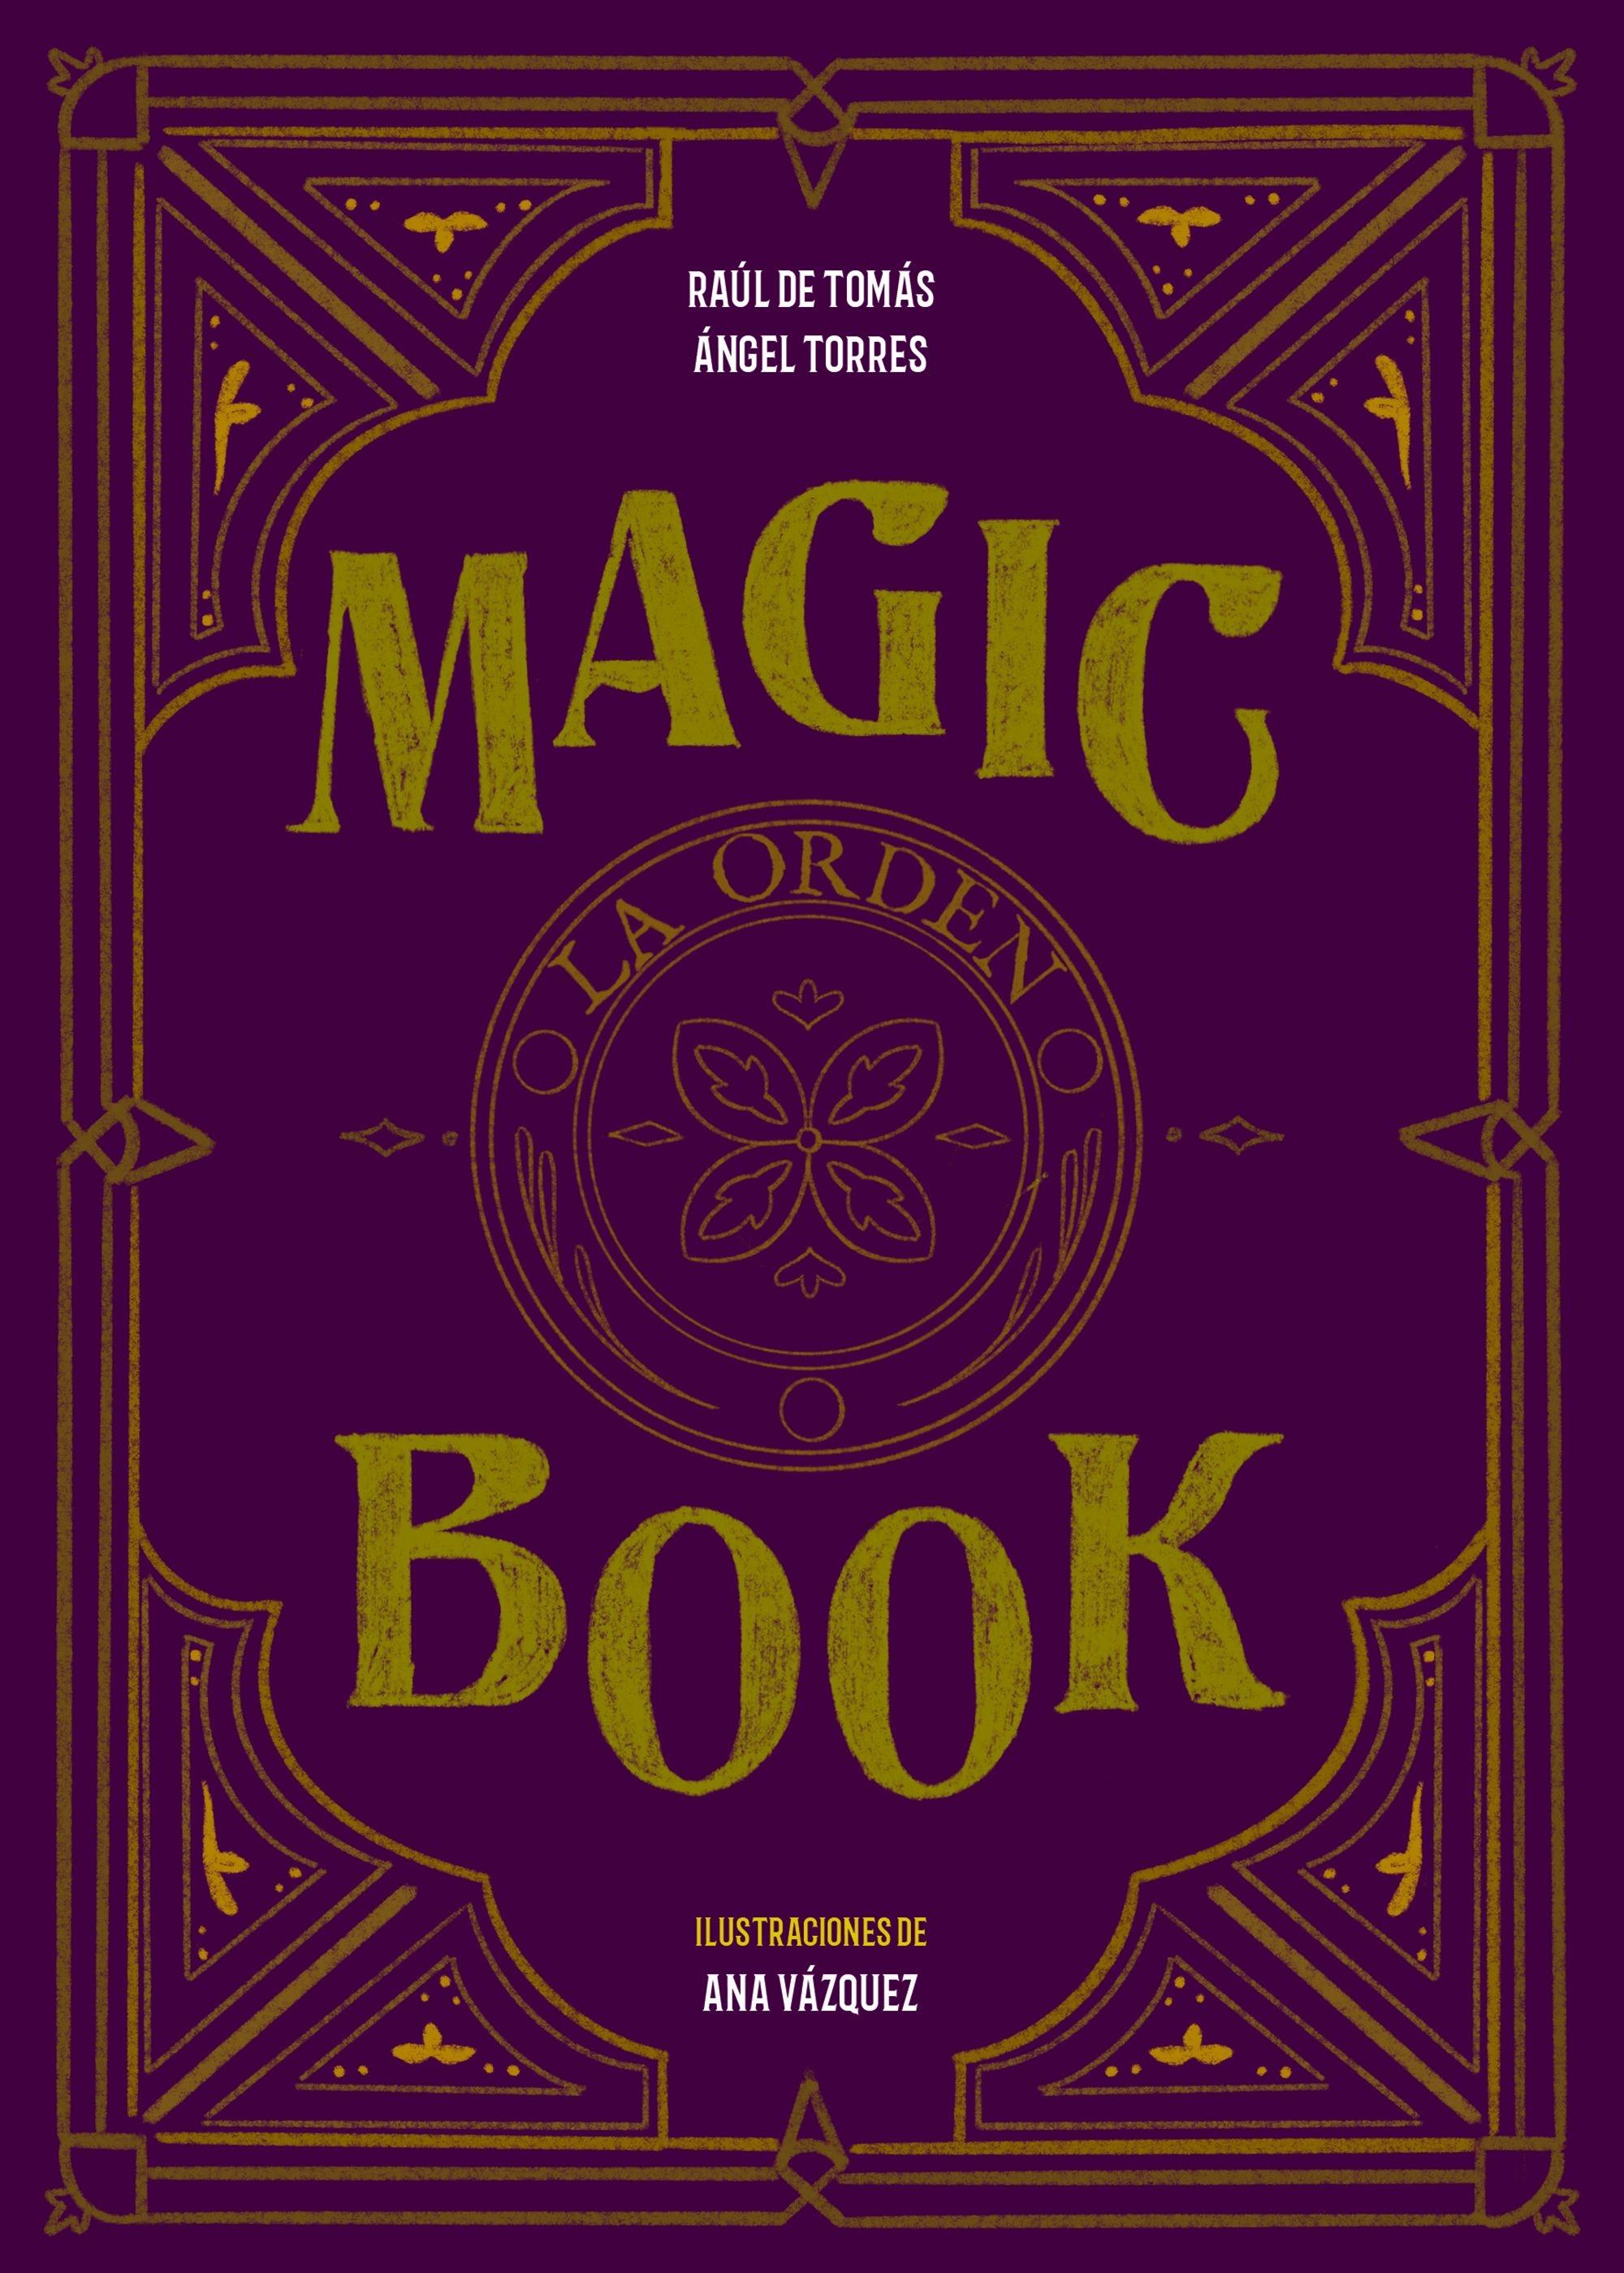 Magic book "La orden". 